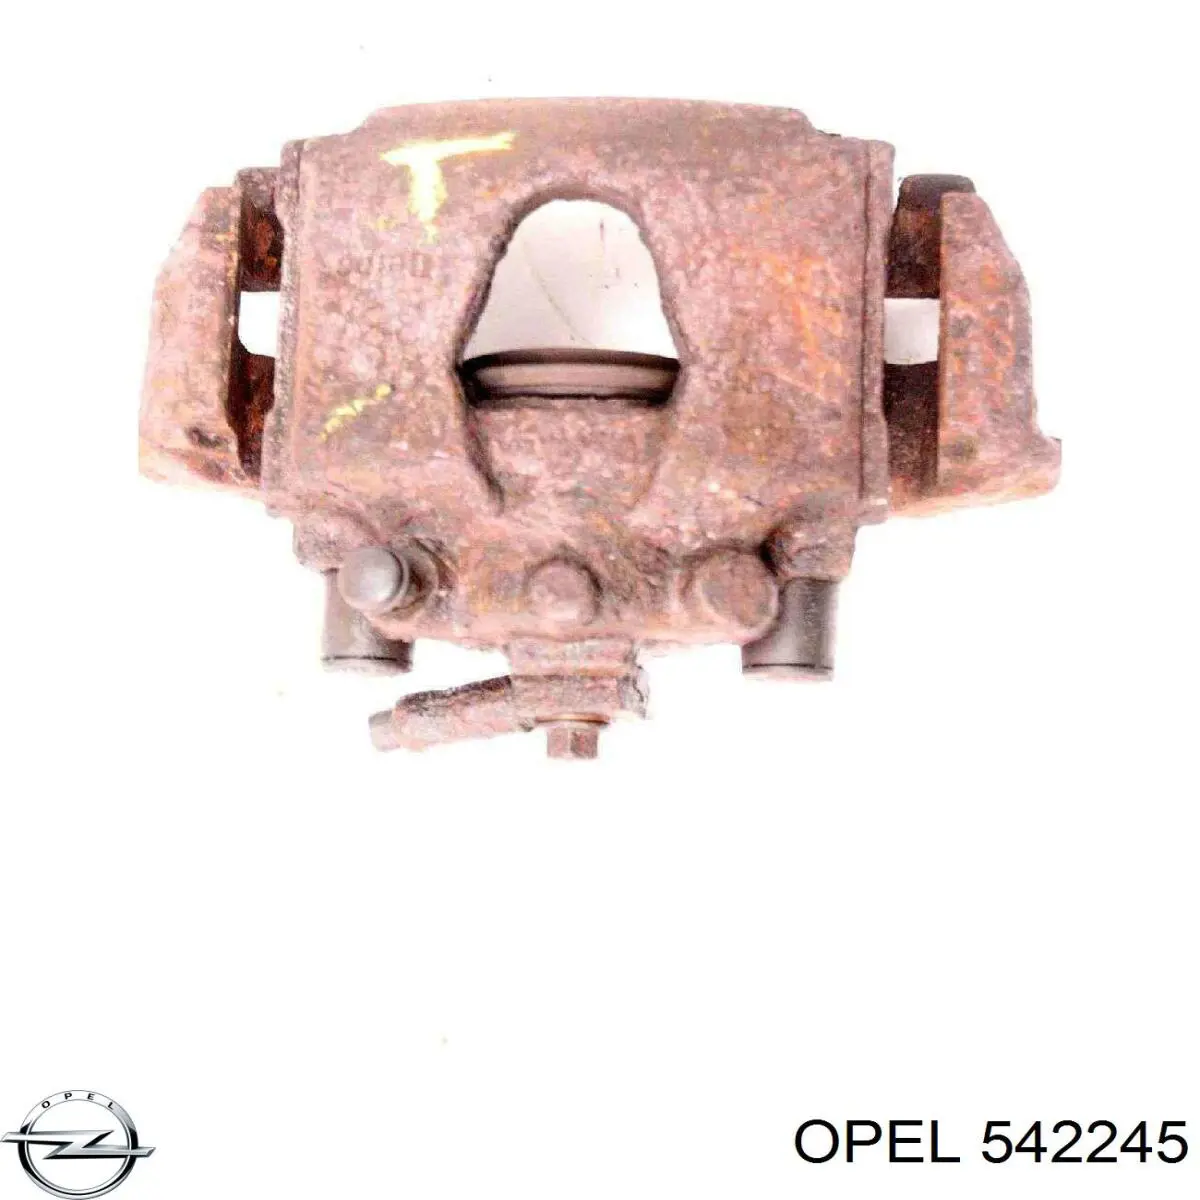 542245 Opel pinza de freno delantera izquierda